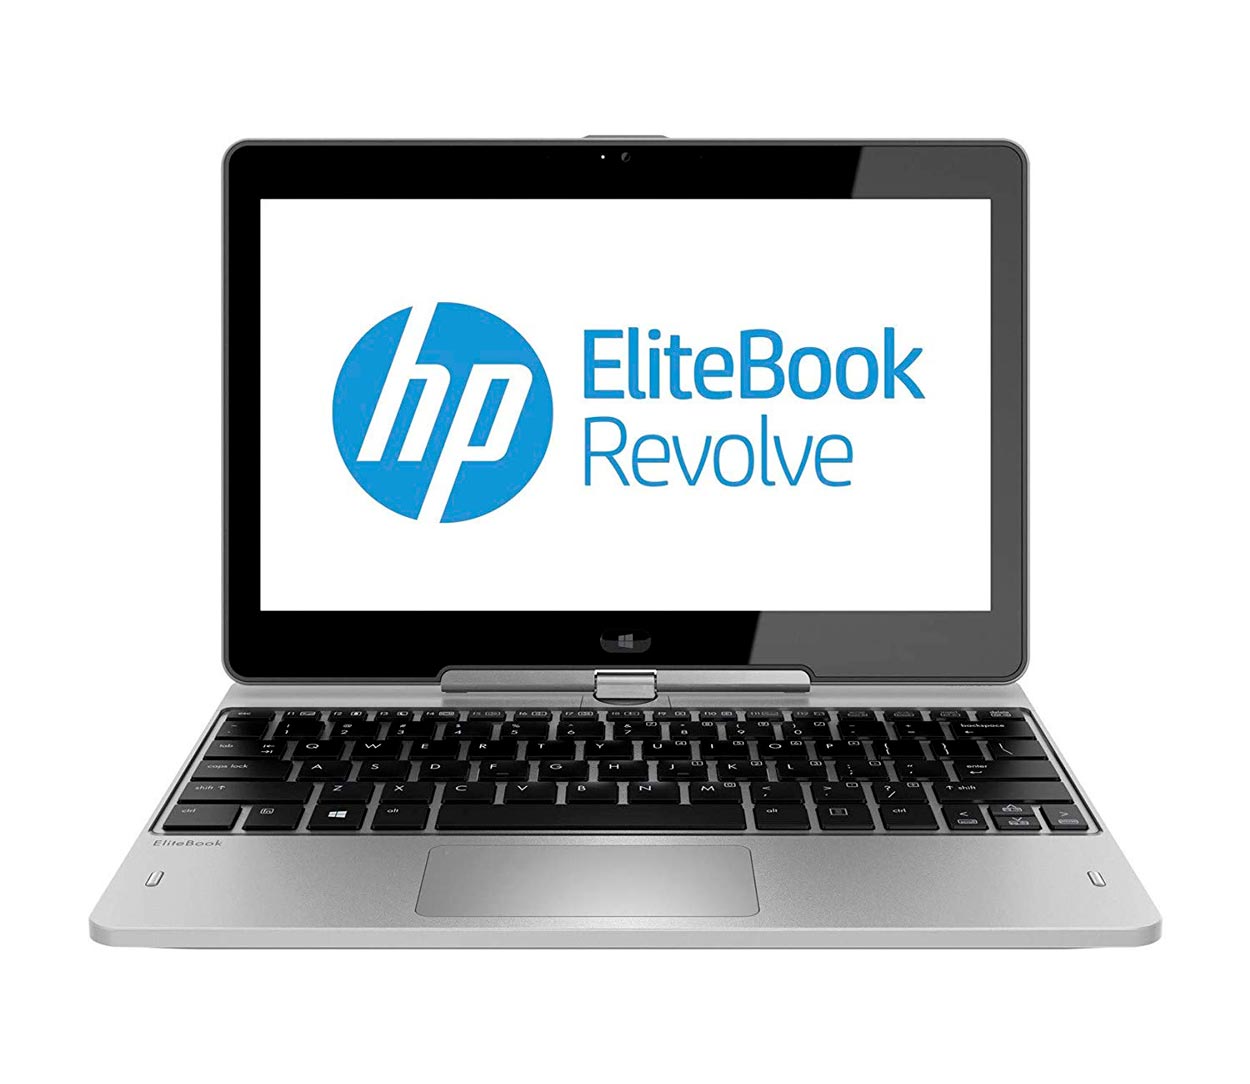 لپ تاپ استوک اچ پی مدل HP EliteBook Revolve 810 با مشخصات i5-4th-8GB-256GB-SSD-2GB-intel-HD-4600laptop-stock-hp-model-EliteBook-Revolve-810-i5-4th-8GB-256GB-SSD-2GB-intel-HD-4600